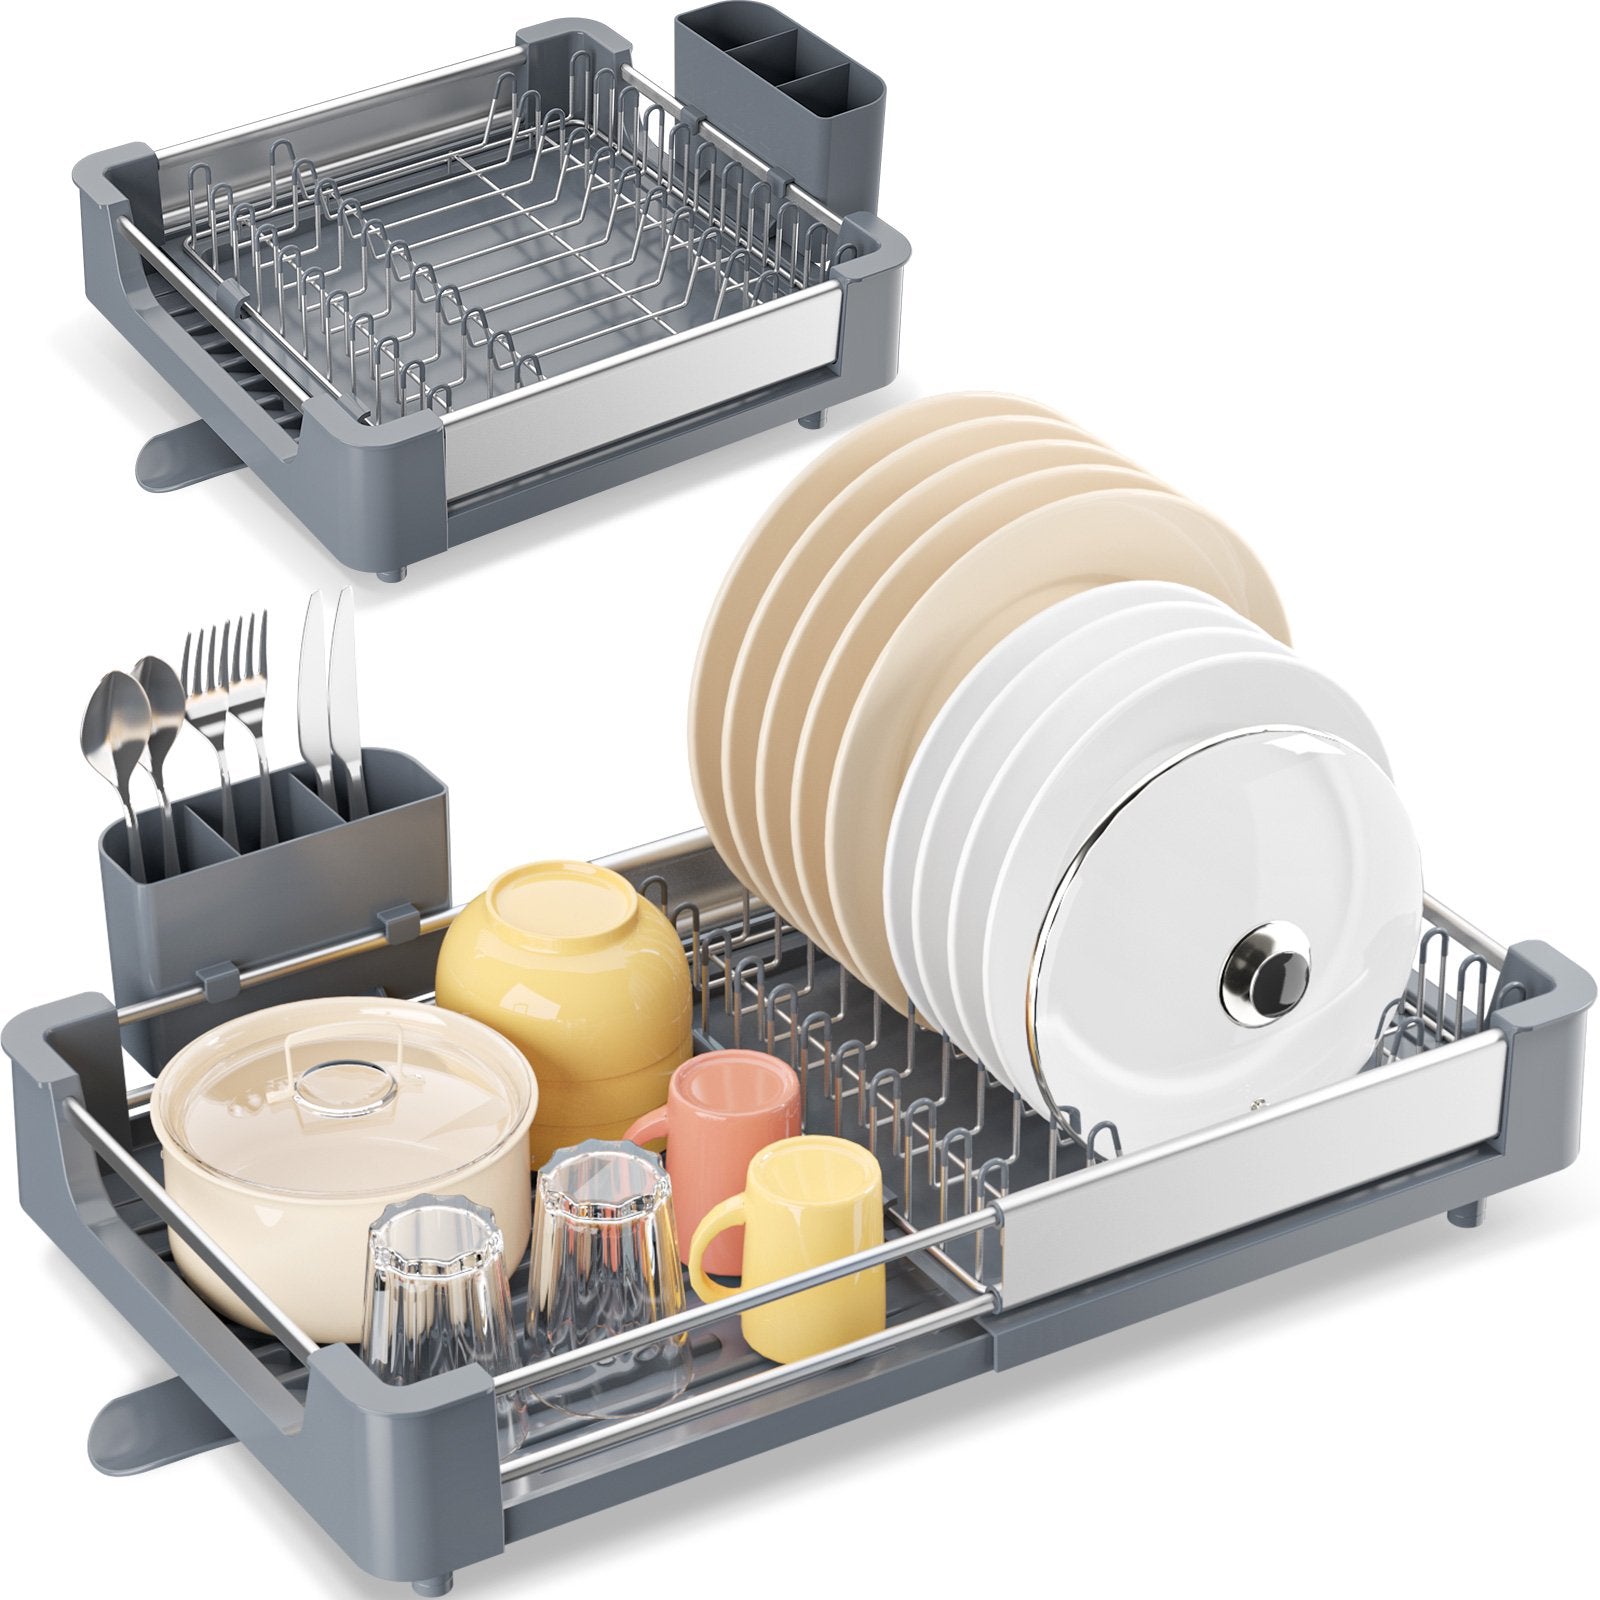 KINGRACK Expandable Dish Drying Rack - Aluminium Foldable Dish Racks for  Kitchen Counter, Adjustable Dish Drying Rack with Drainboard Set Swivel